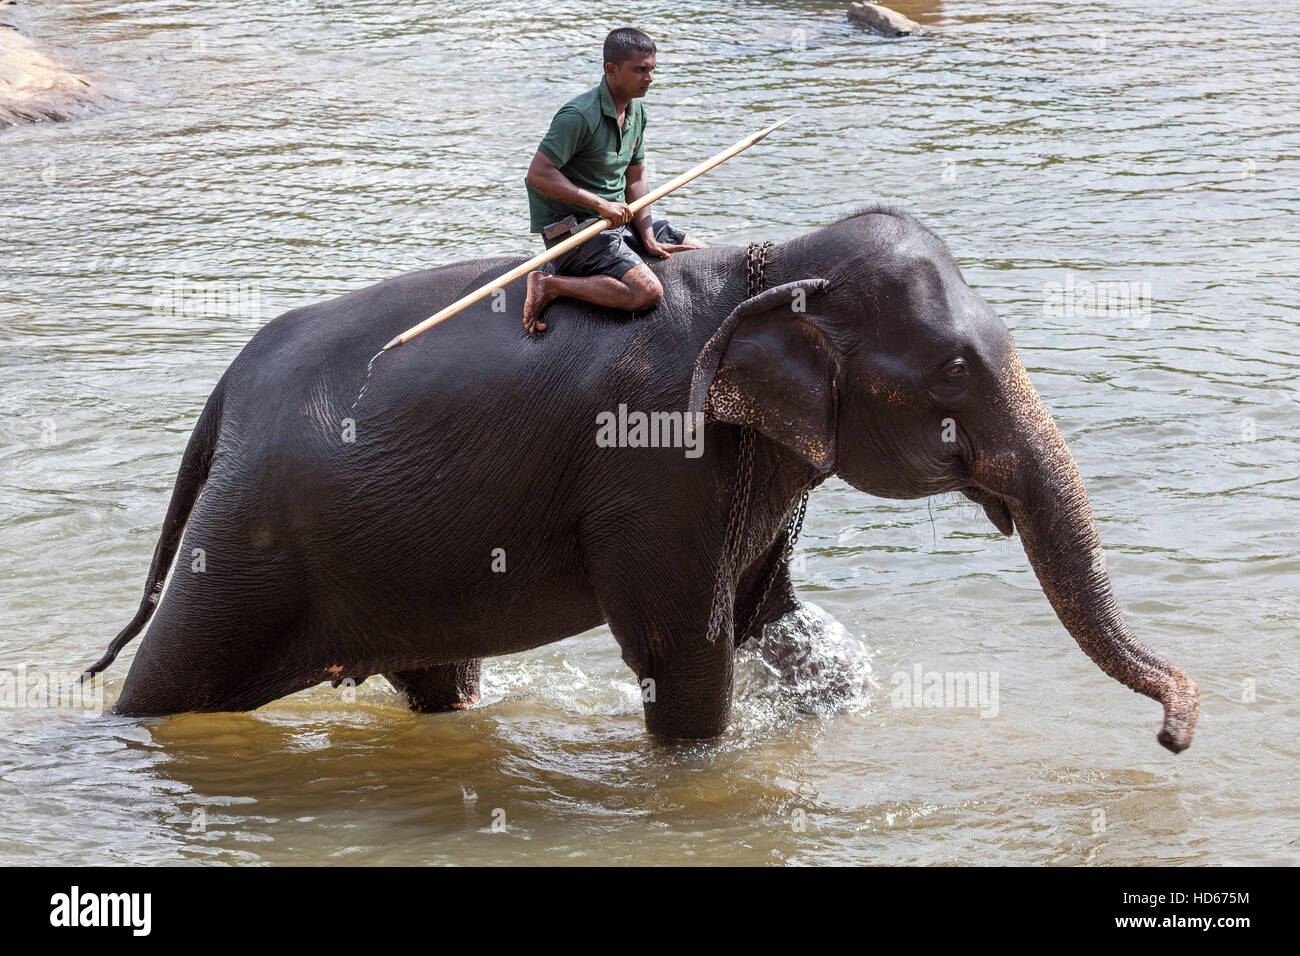 Mahout rides Asian elephant (Elephas maximus), Maha Oya River, Pinnawala Elephant Orphanage, Central Province, Sri Lanka Stock Photo